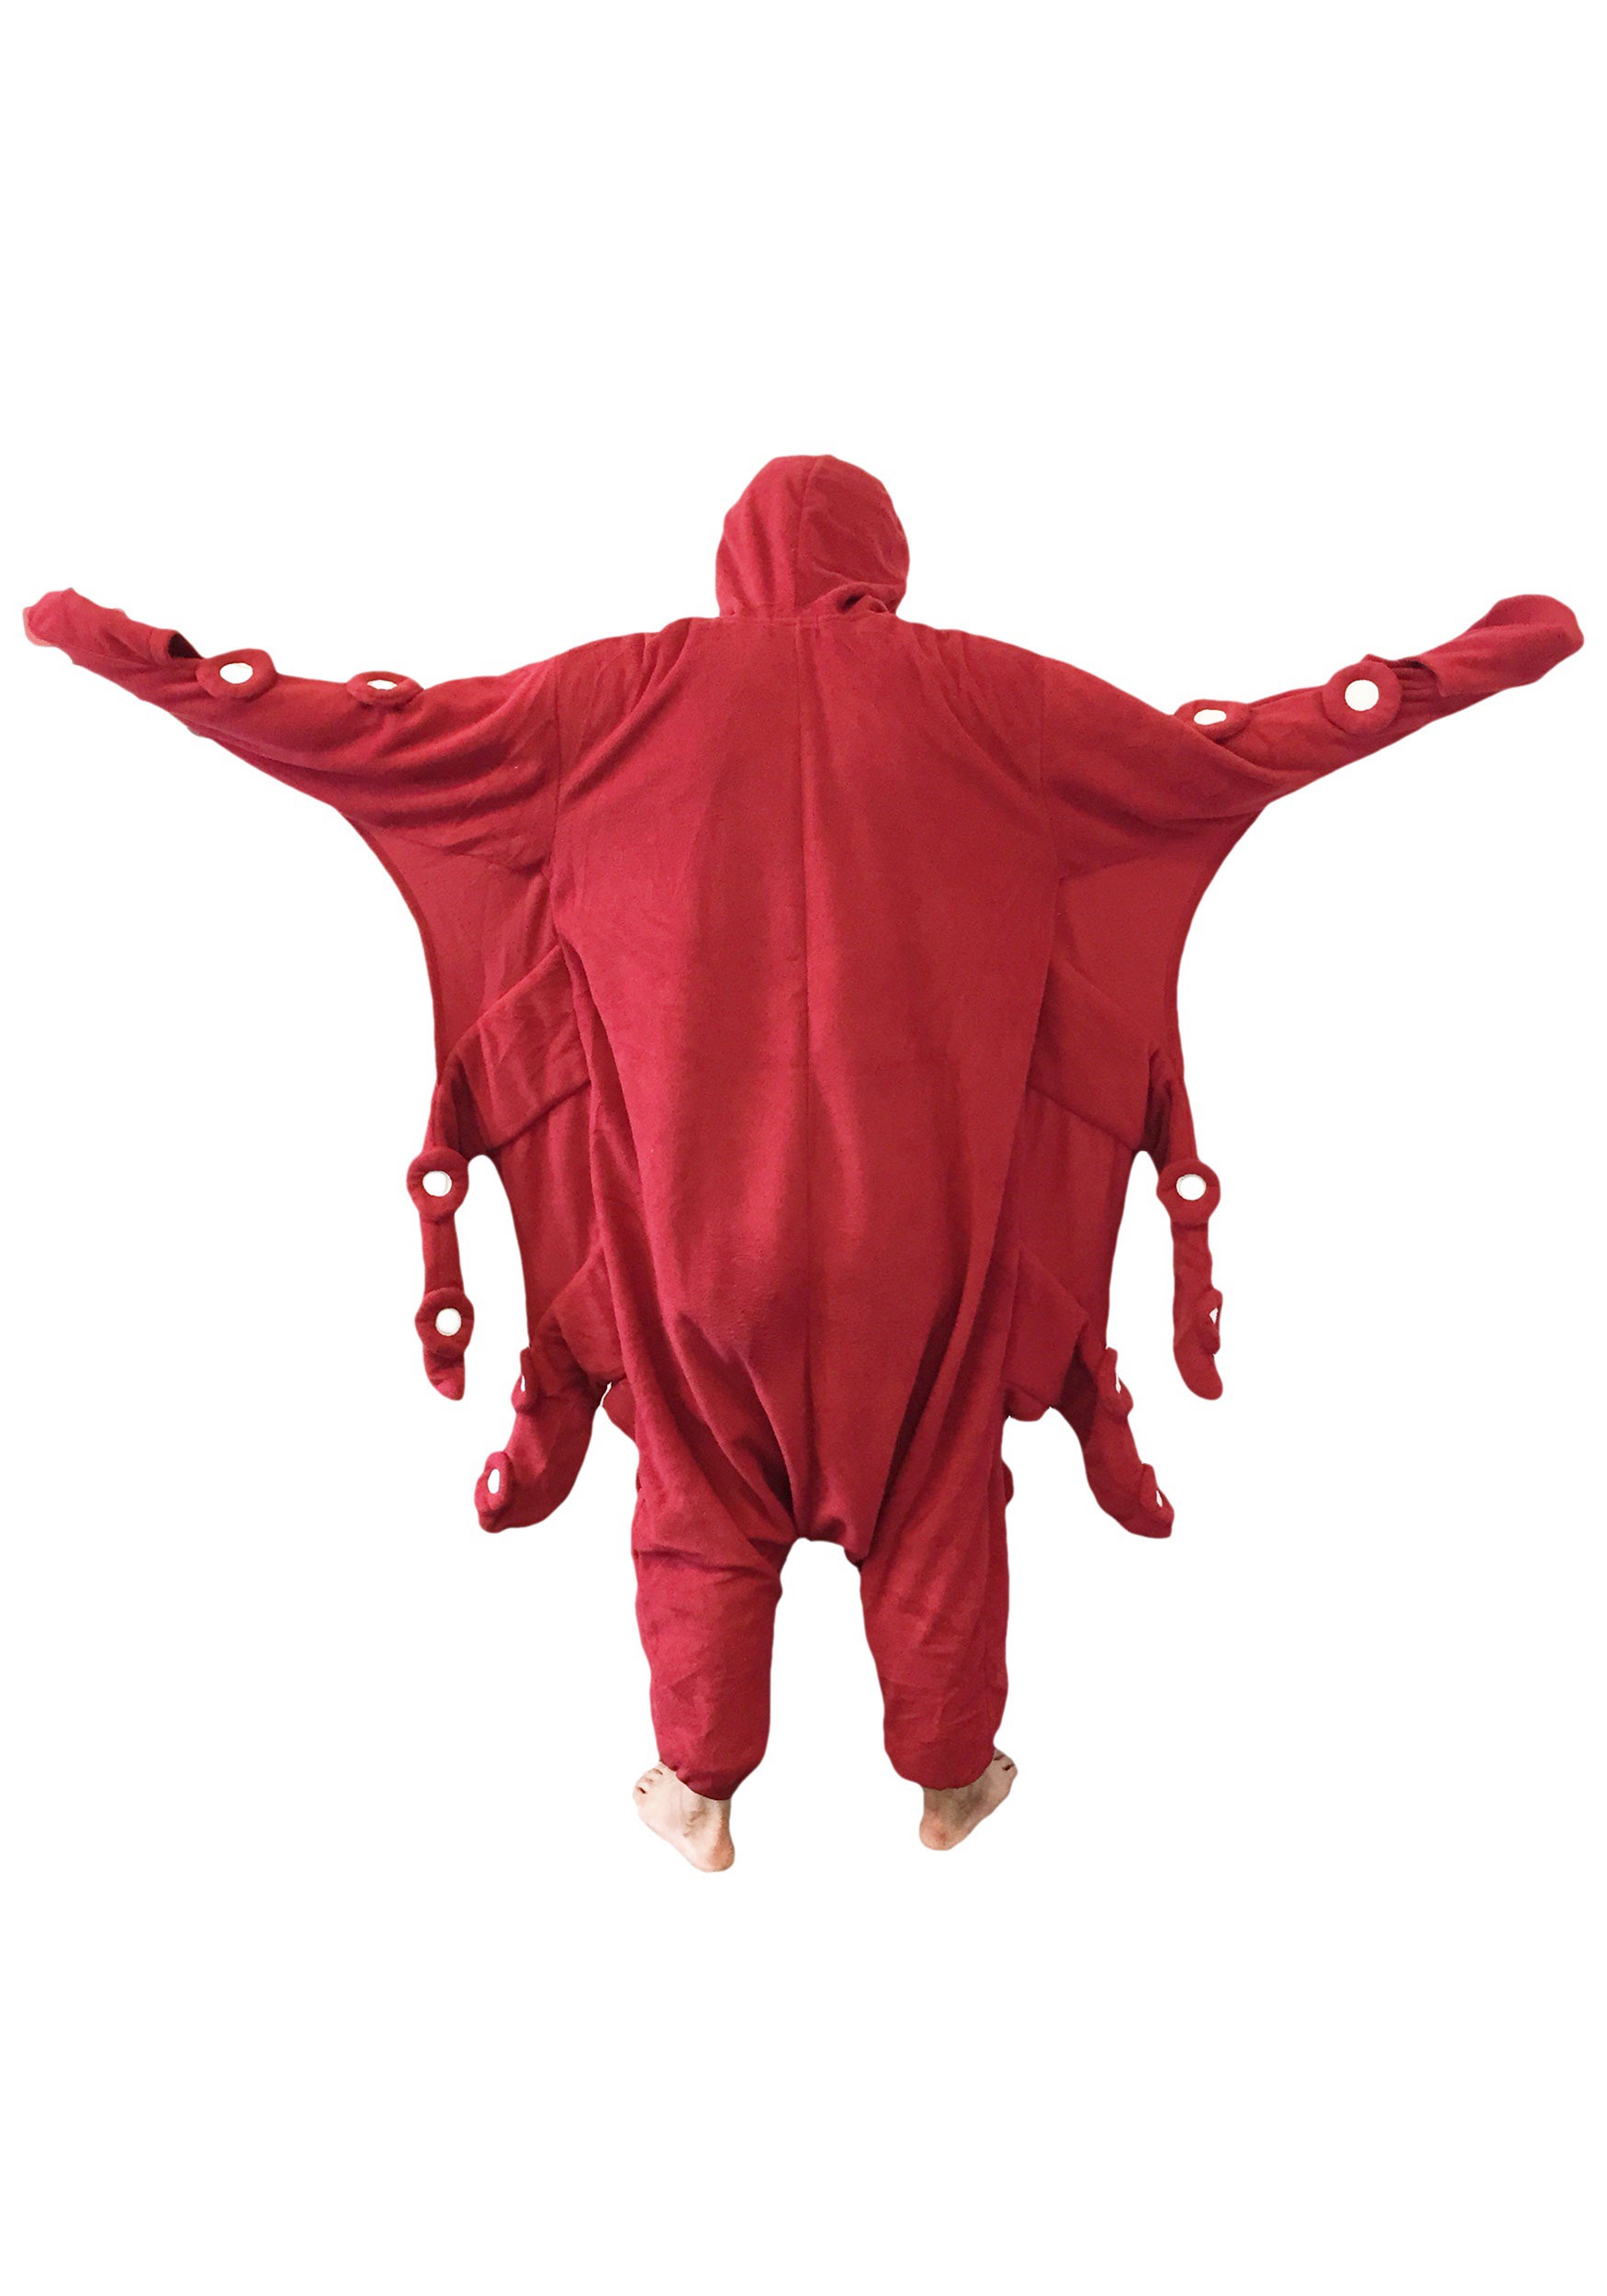 Disfraz de kigurumi de pulpo rojo adulto Multicolor – Yaxa Colombia